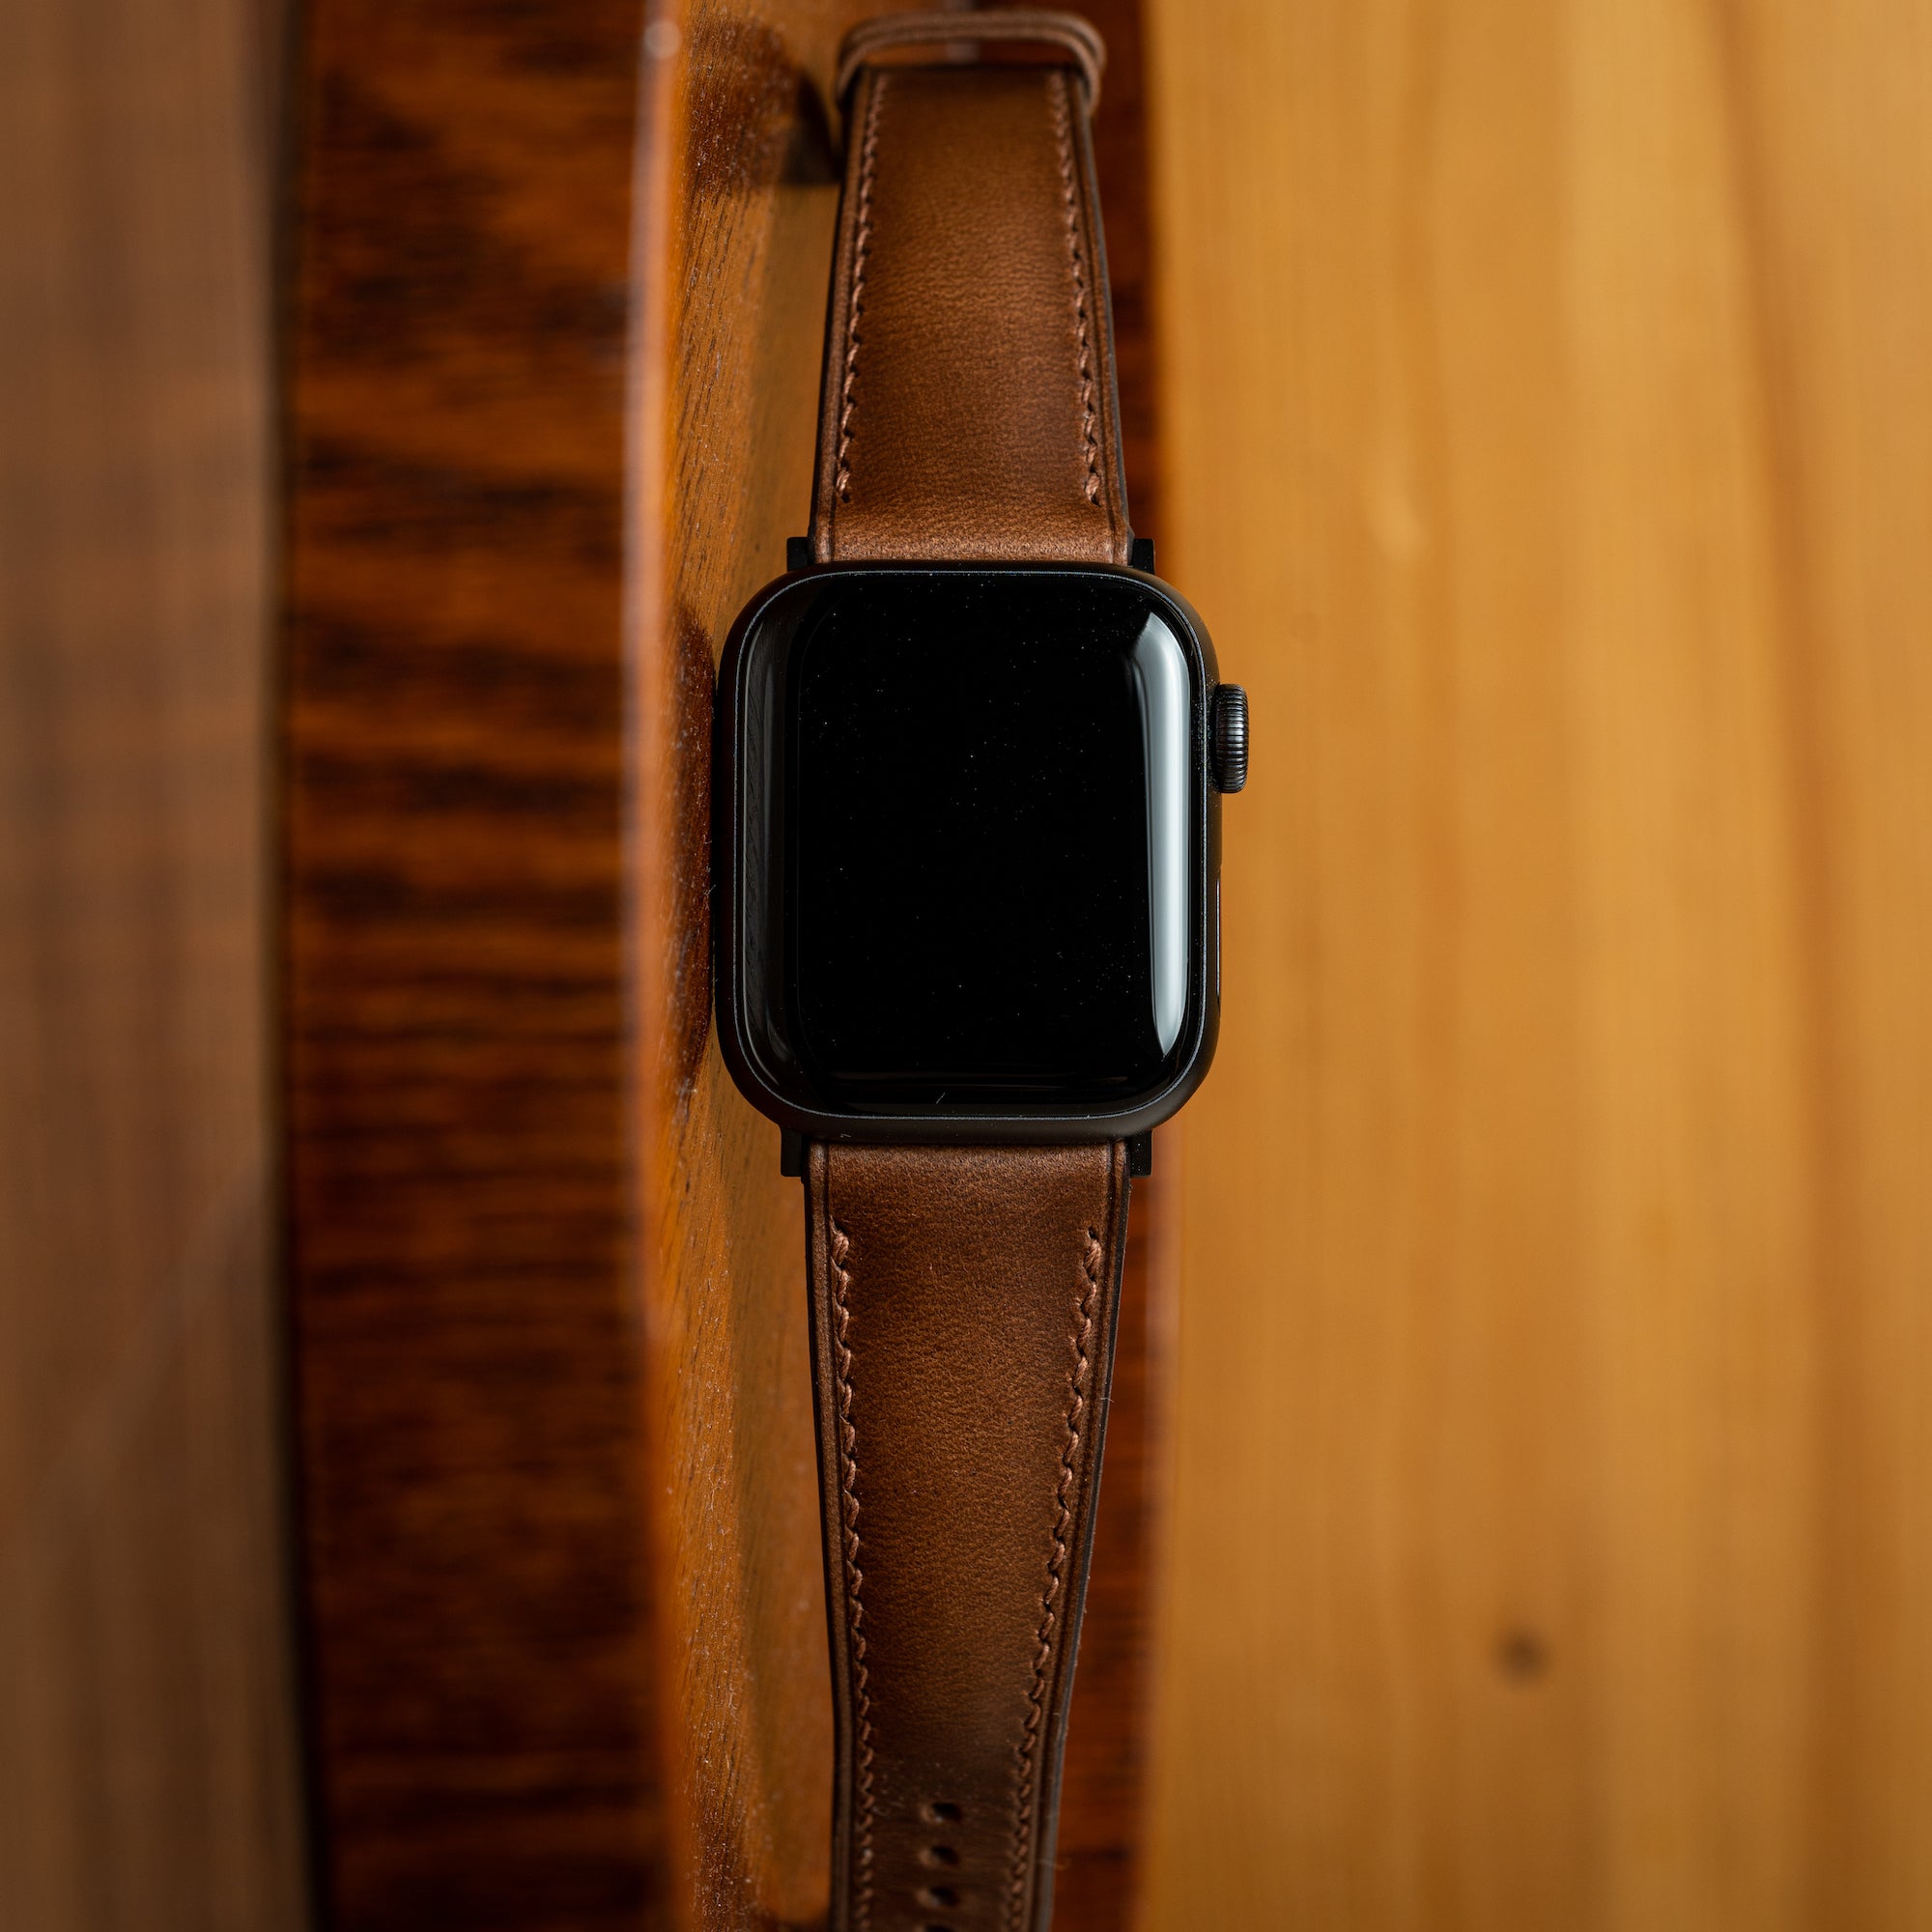 Apple Watch Straps - Chromexcel